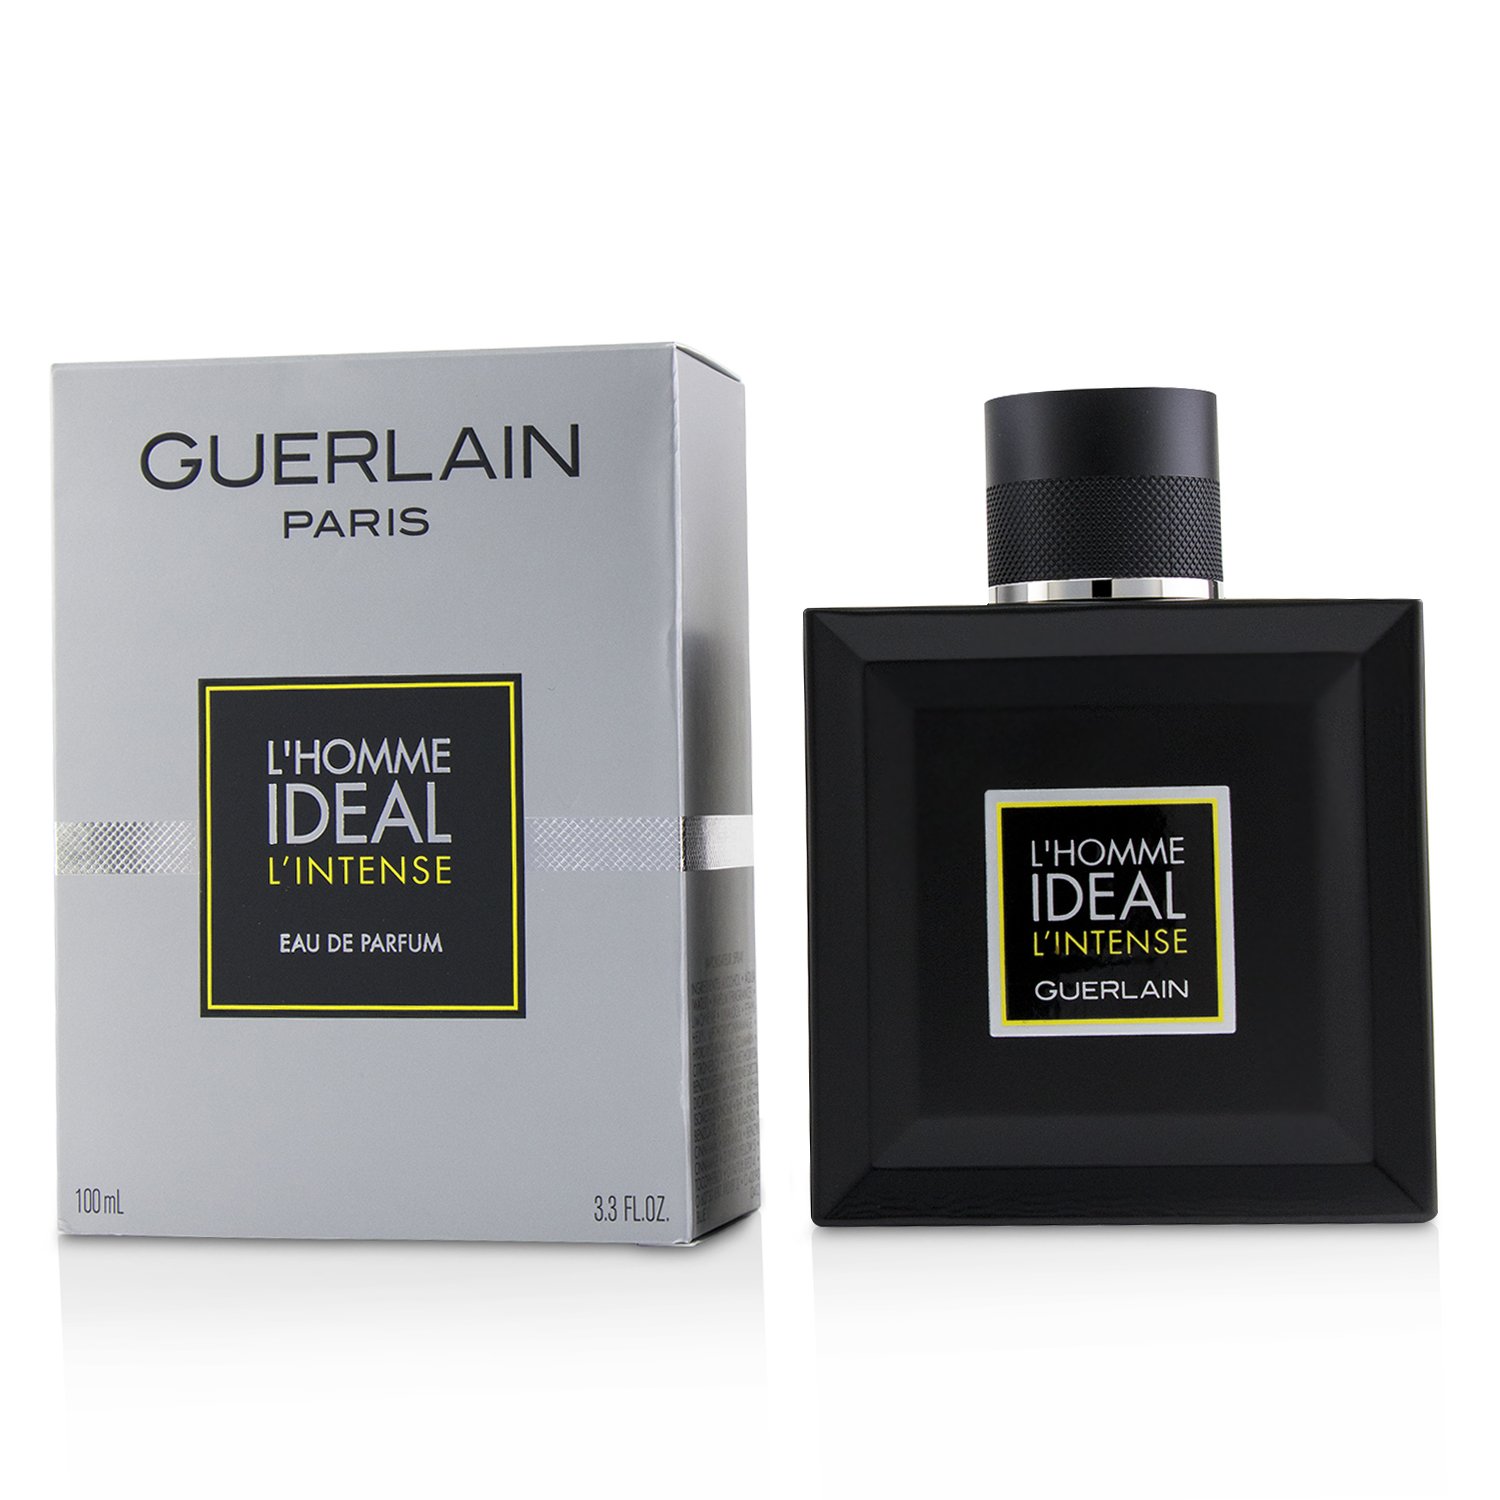 嬌蘭 Guerlain - IDEALMAN INTENSE 醇烈男性香水